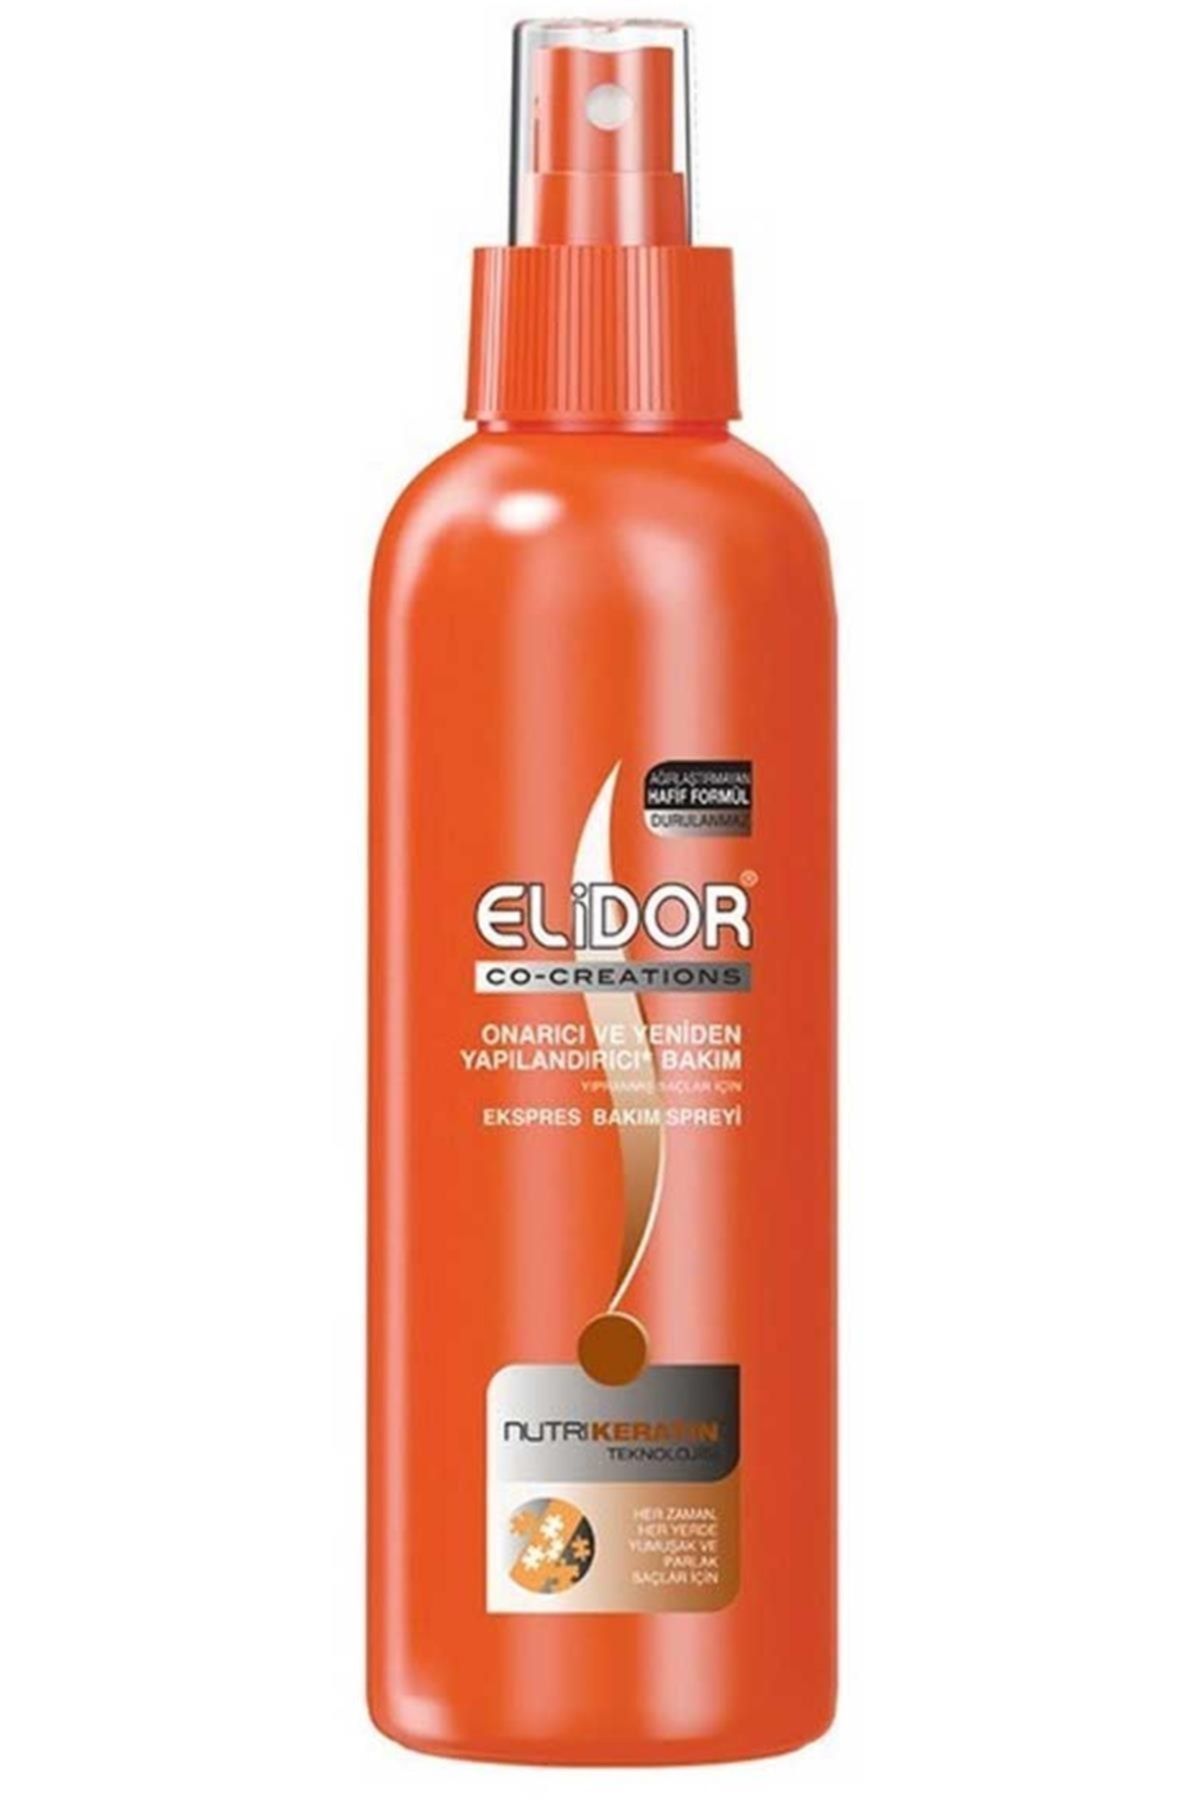 Elidor Marka: Onarıcı Bakım Sıvı Saç Kremi 200 Ml Kategori: Saç Kremi